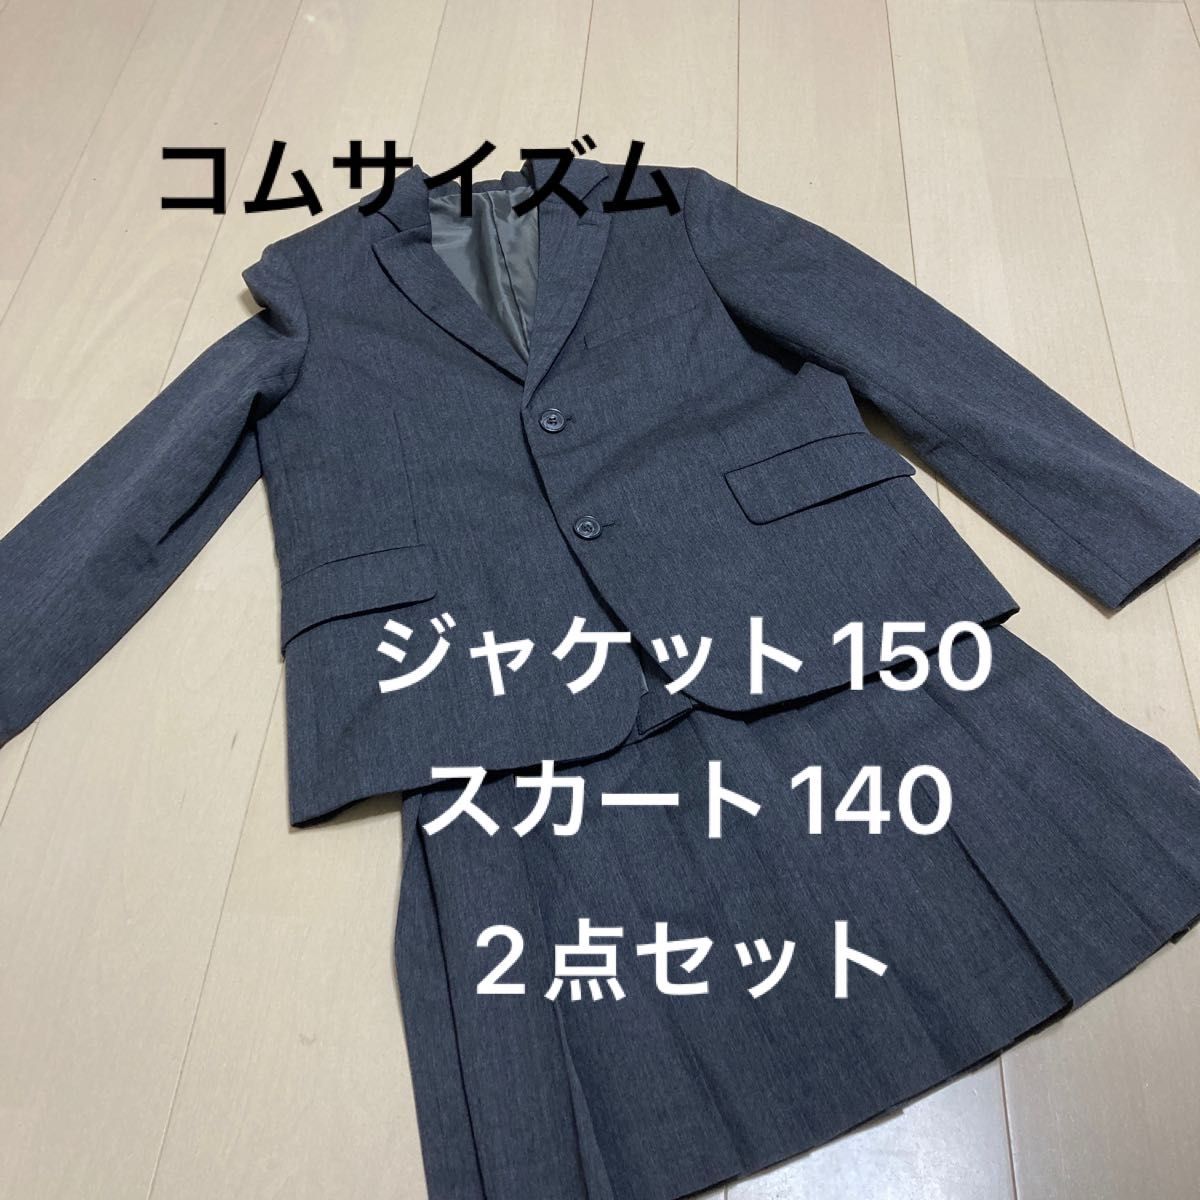 コムサ 入学式 卒業式 スーツセット 150 - フォーマル